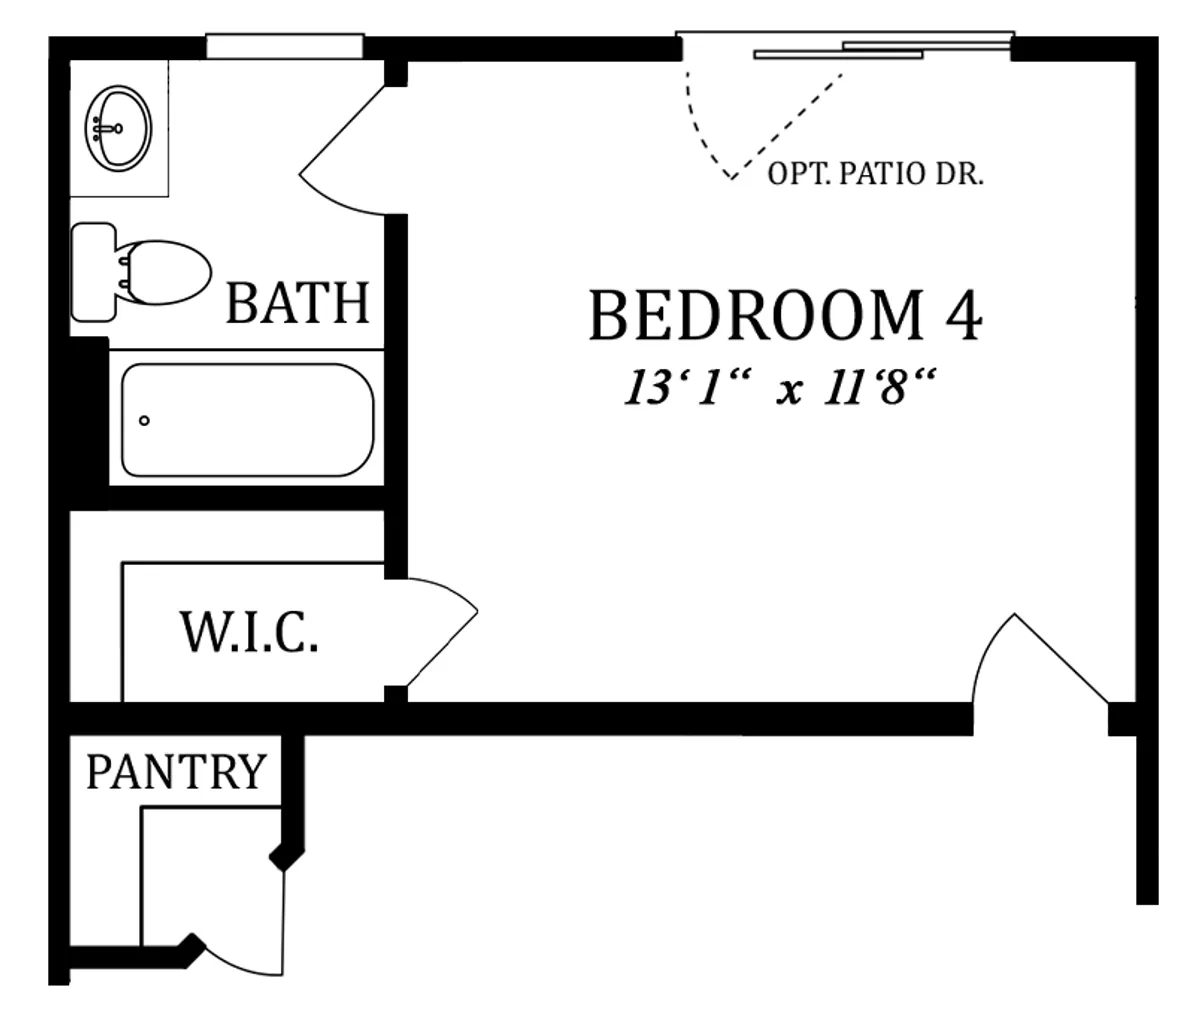 First Floor | Optional Bedroom 4 - In Lieu of Morning Room